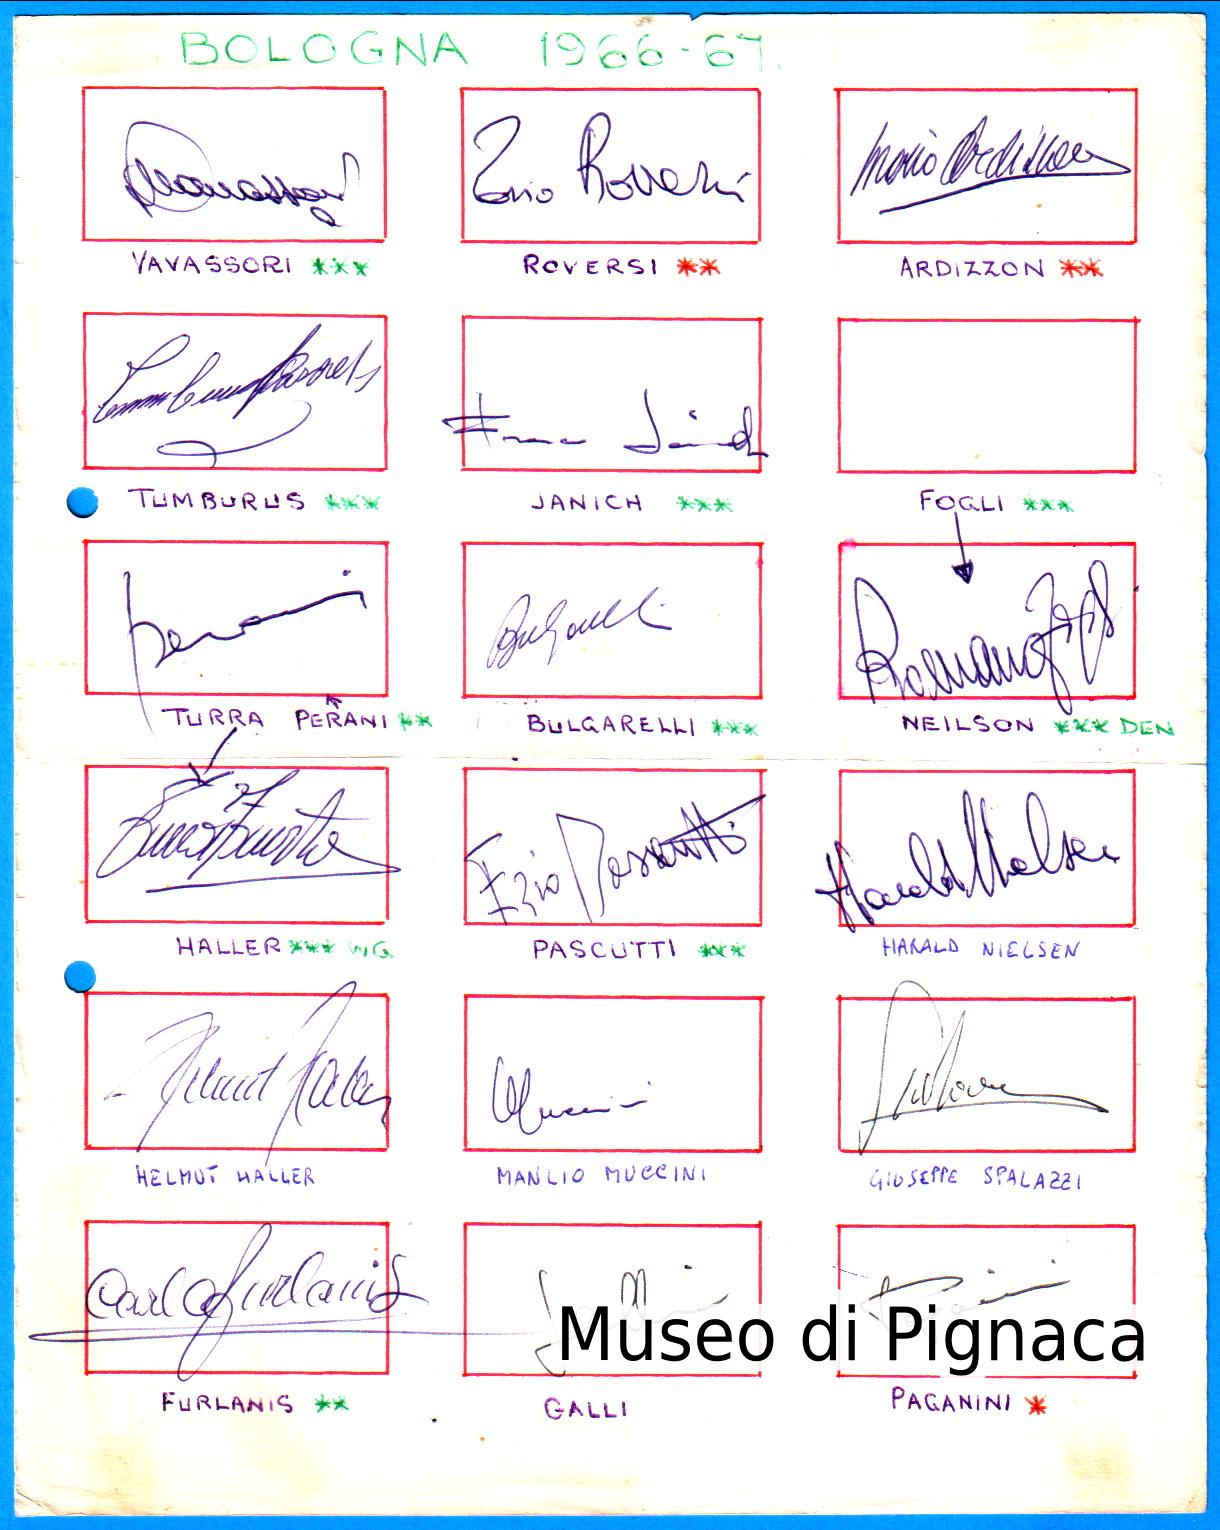 1966-67 autografi originali dei calciatori componenti la rosa